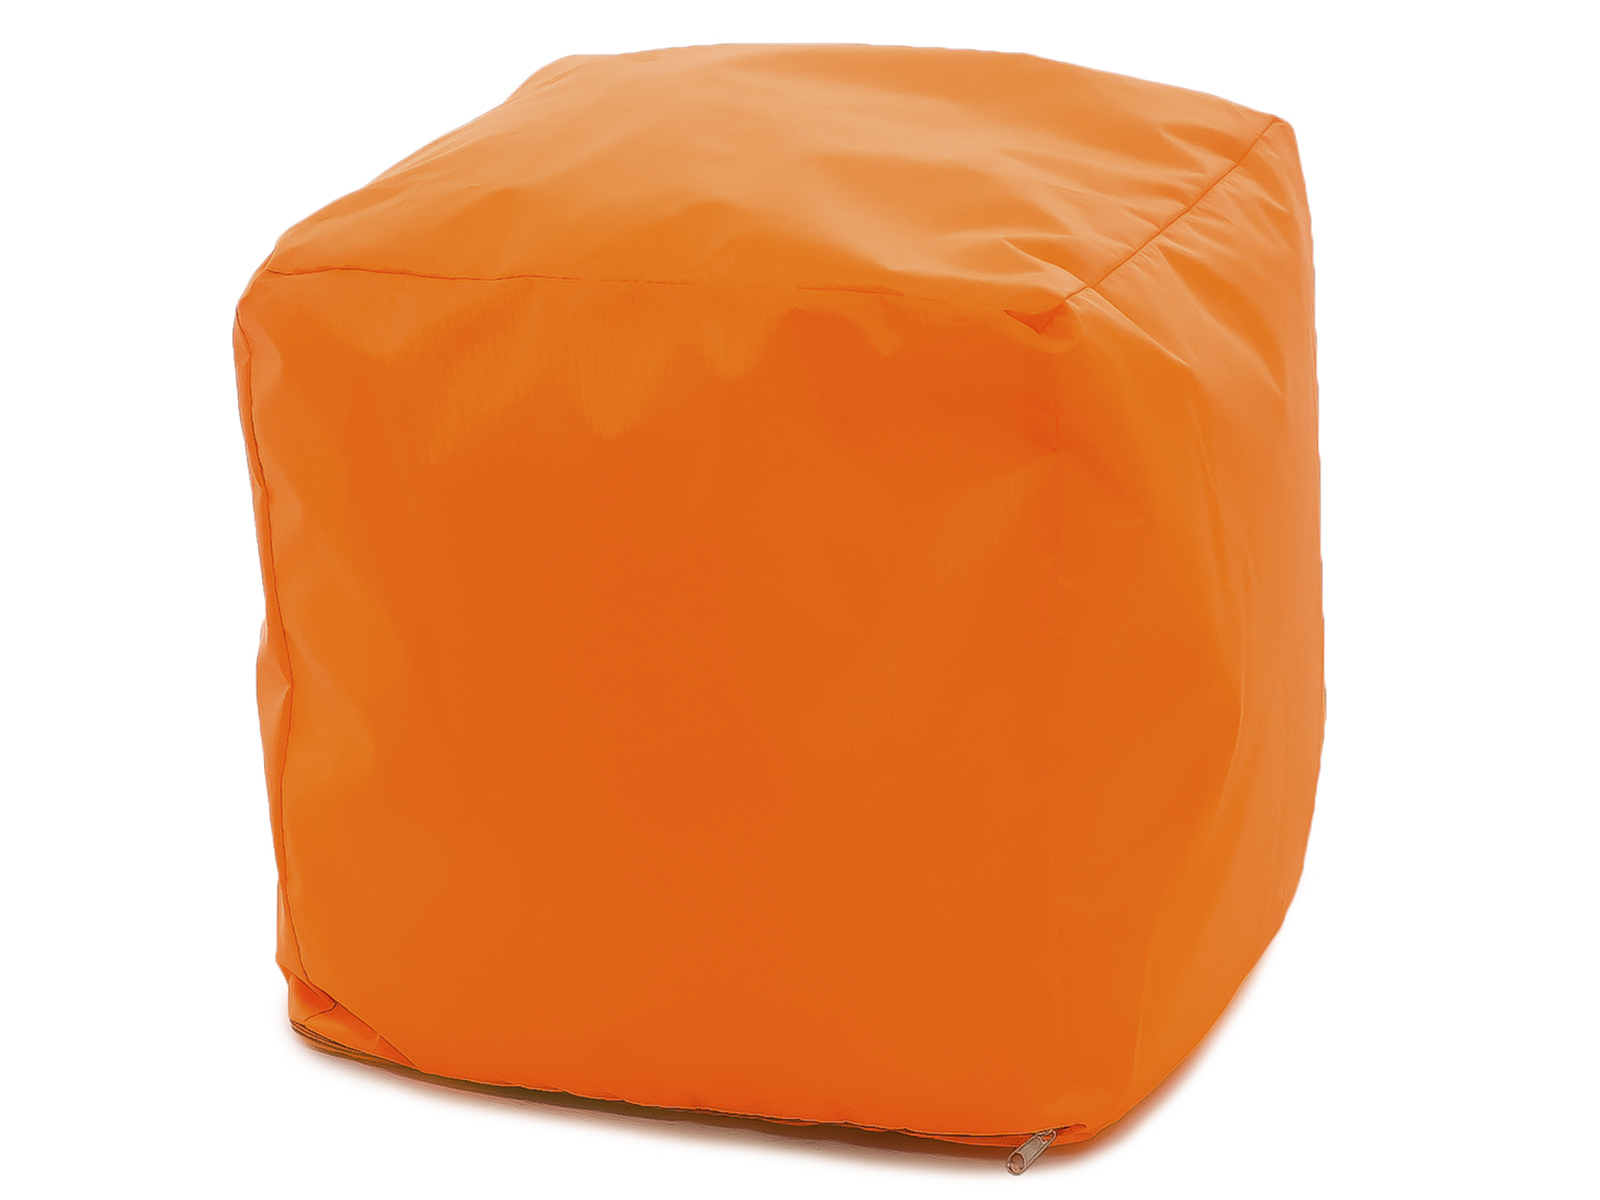 Бескаркасный пуф-куб DreamBag Куб one size, оксфорд, Оранжевый